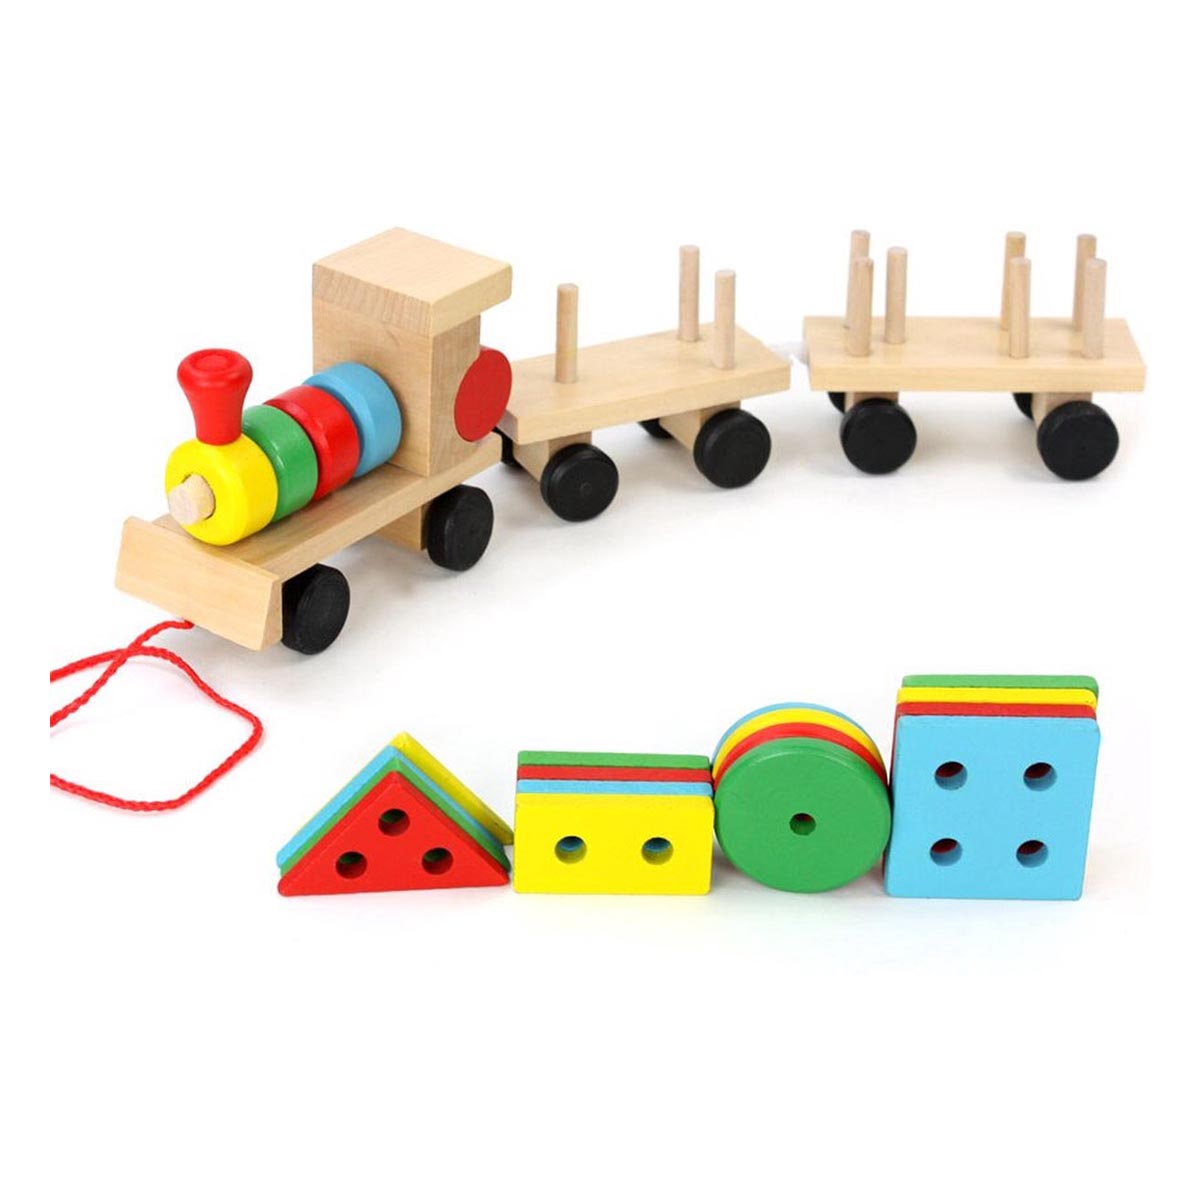 Ariko Train en bois XL avec blocs et formes - Train à blocs - Train jouet - Éducation avec formes et couleurs -